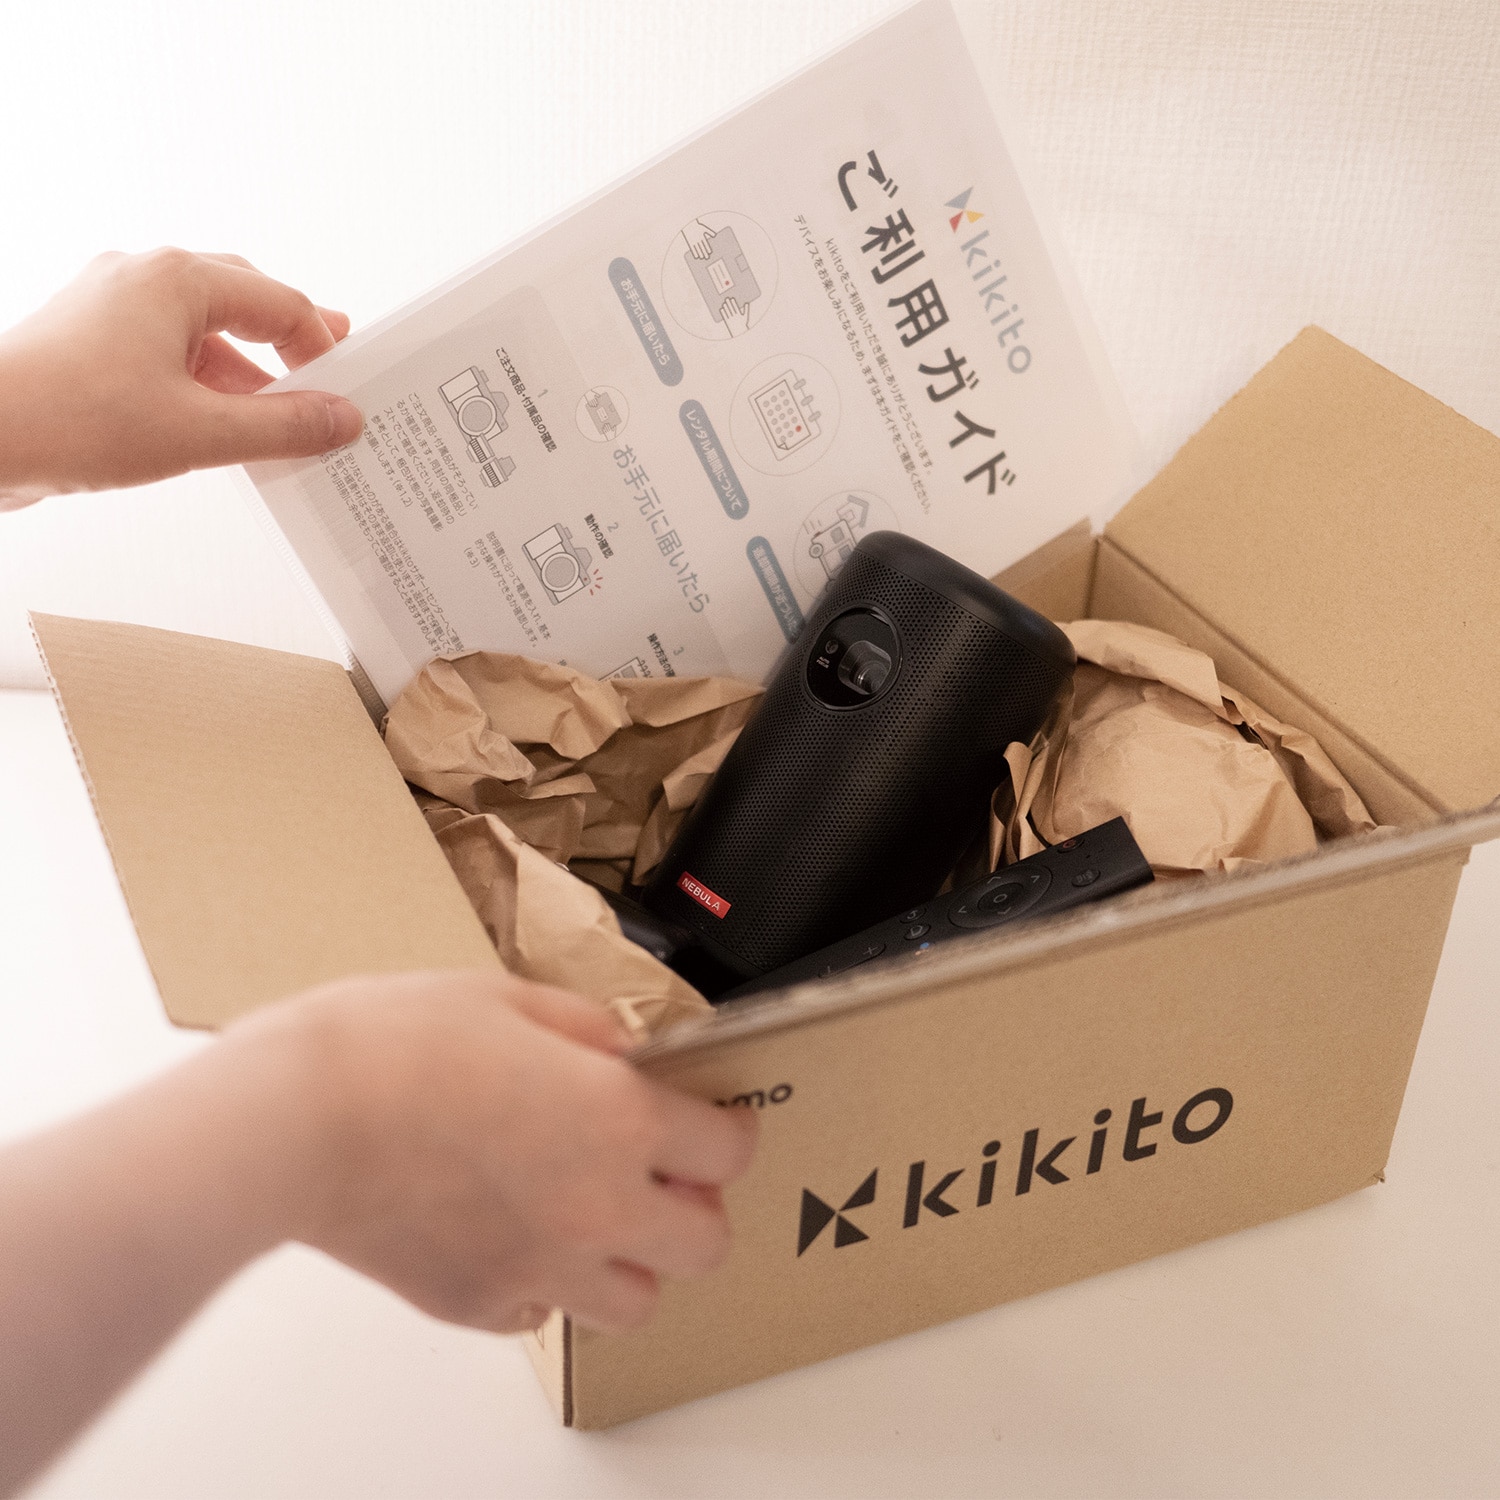 kikito デバイスレンタルサービス利用券